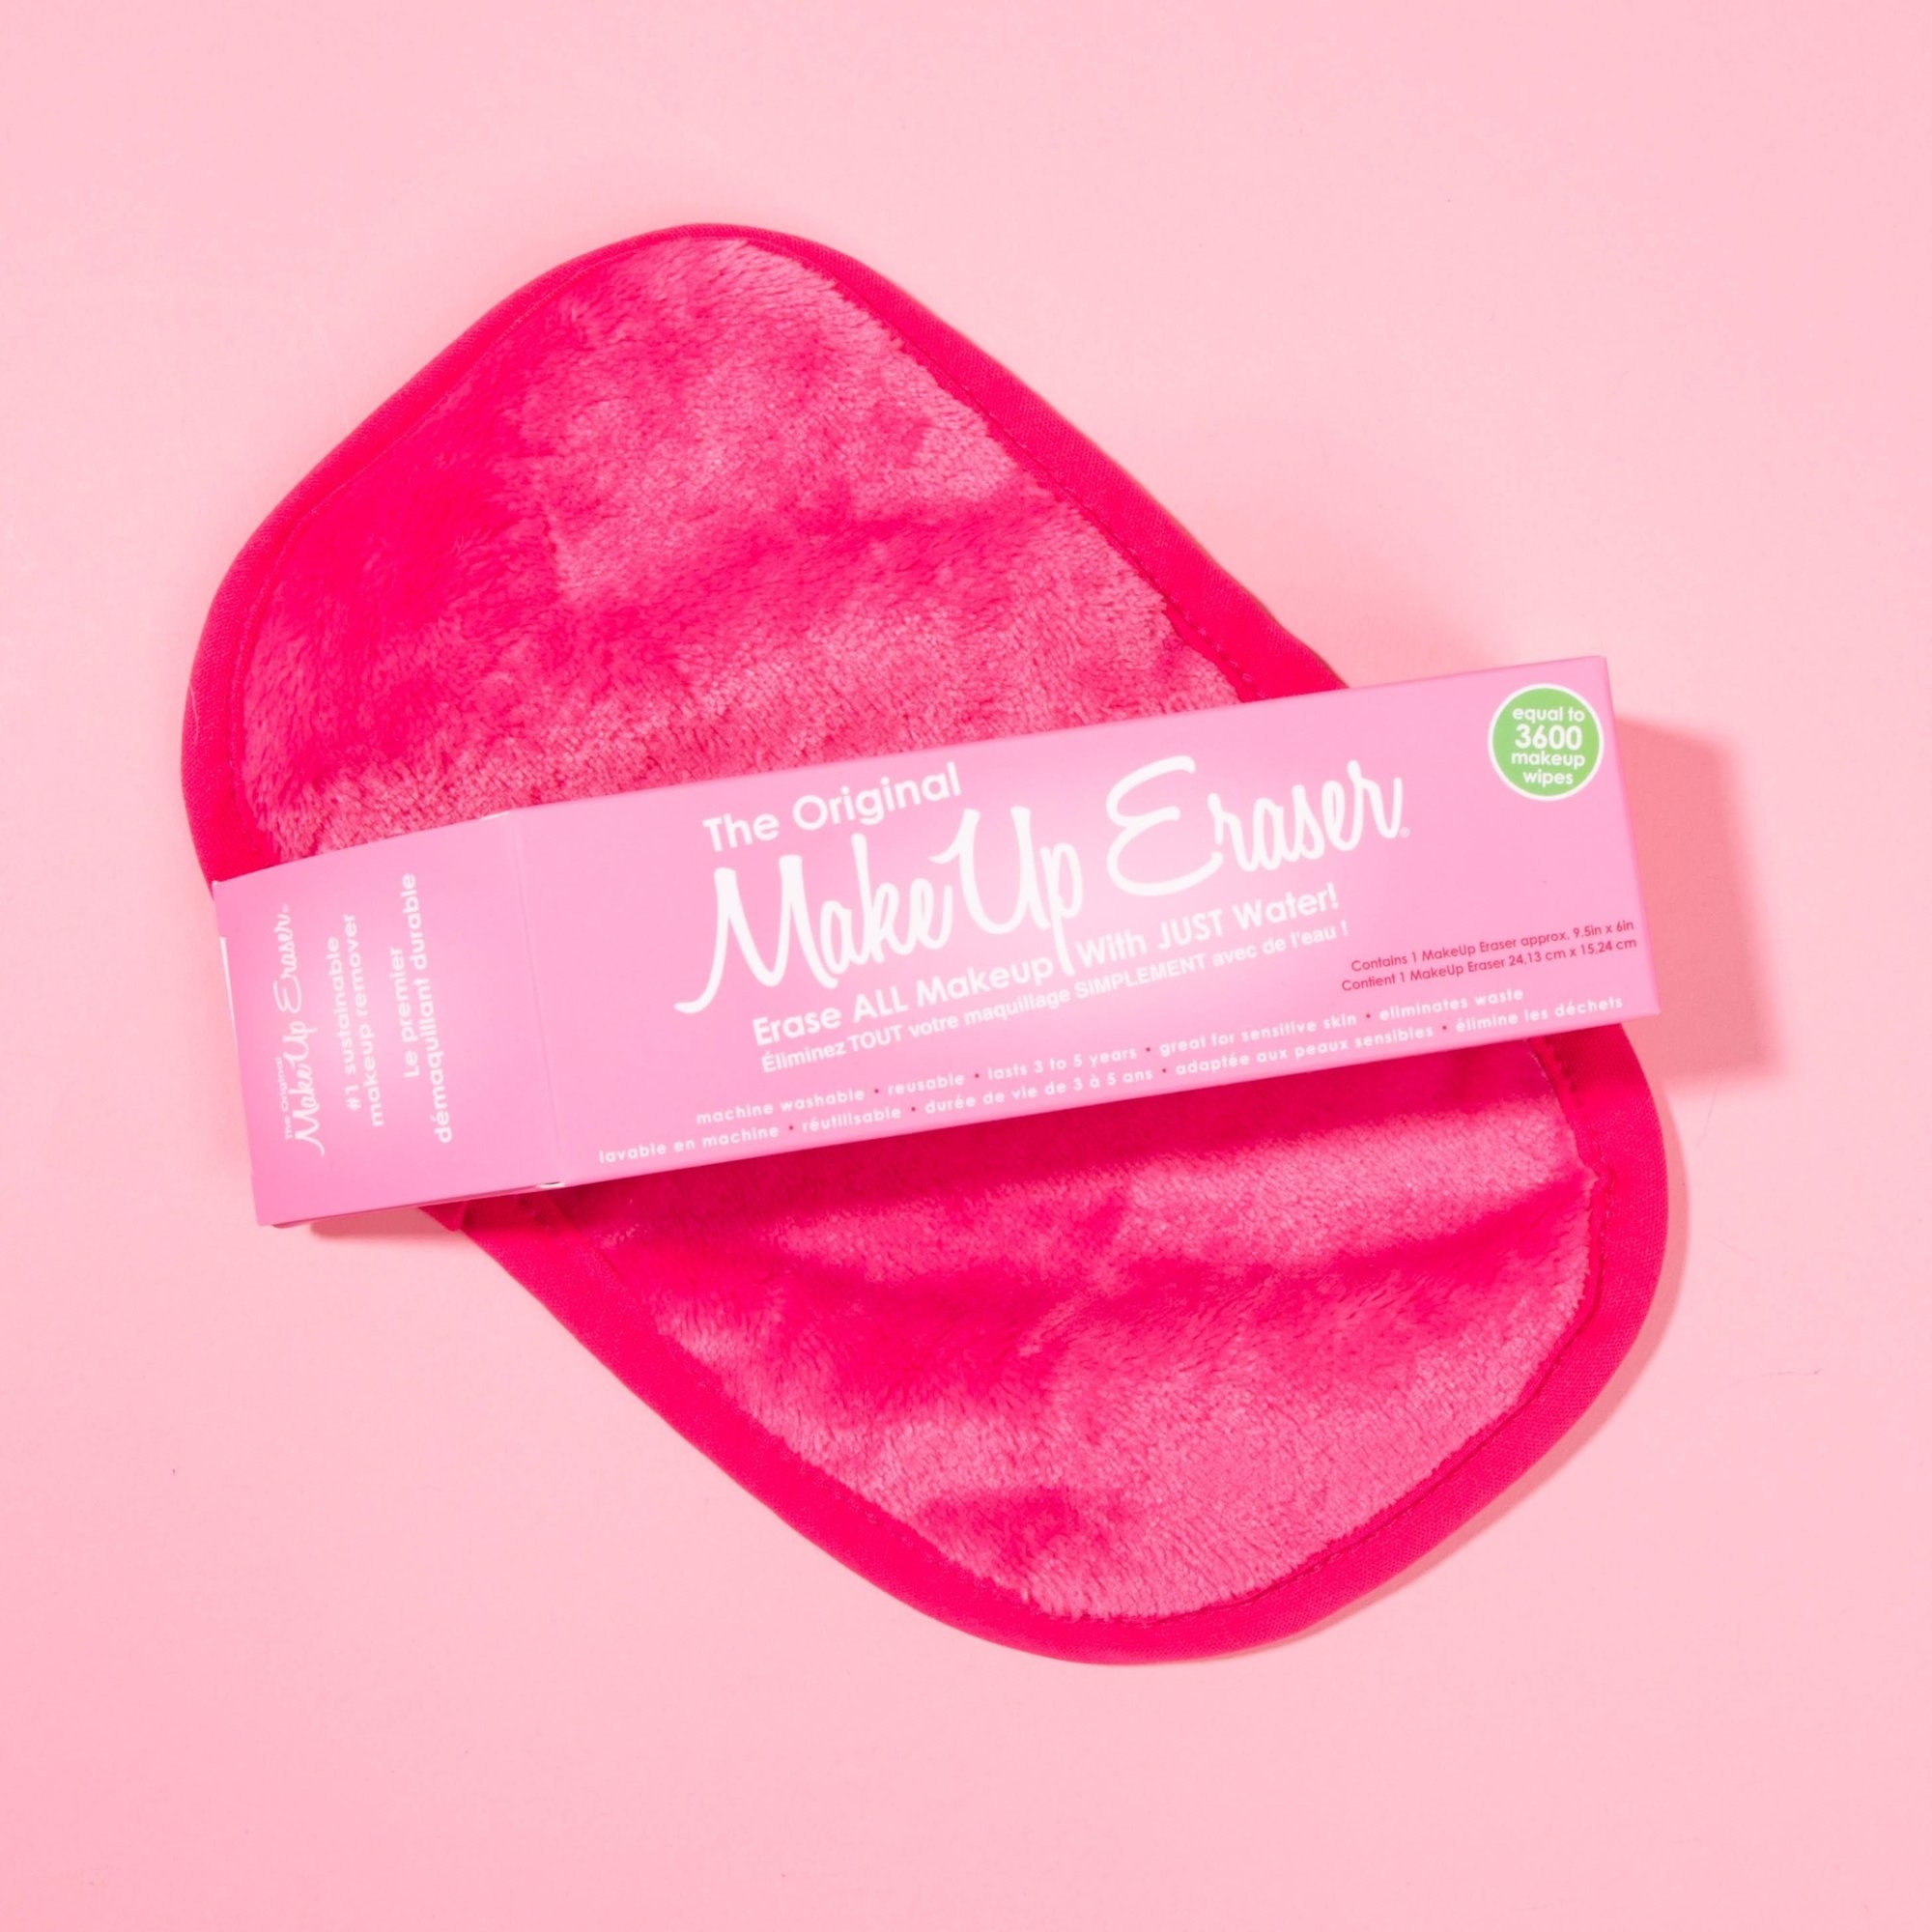 the pink makeup eraser cloth